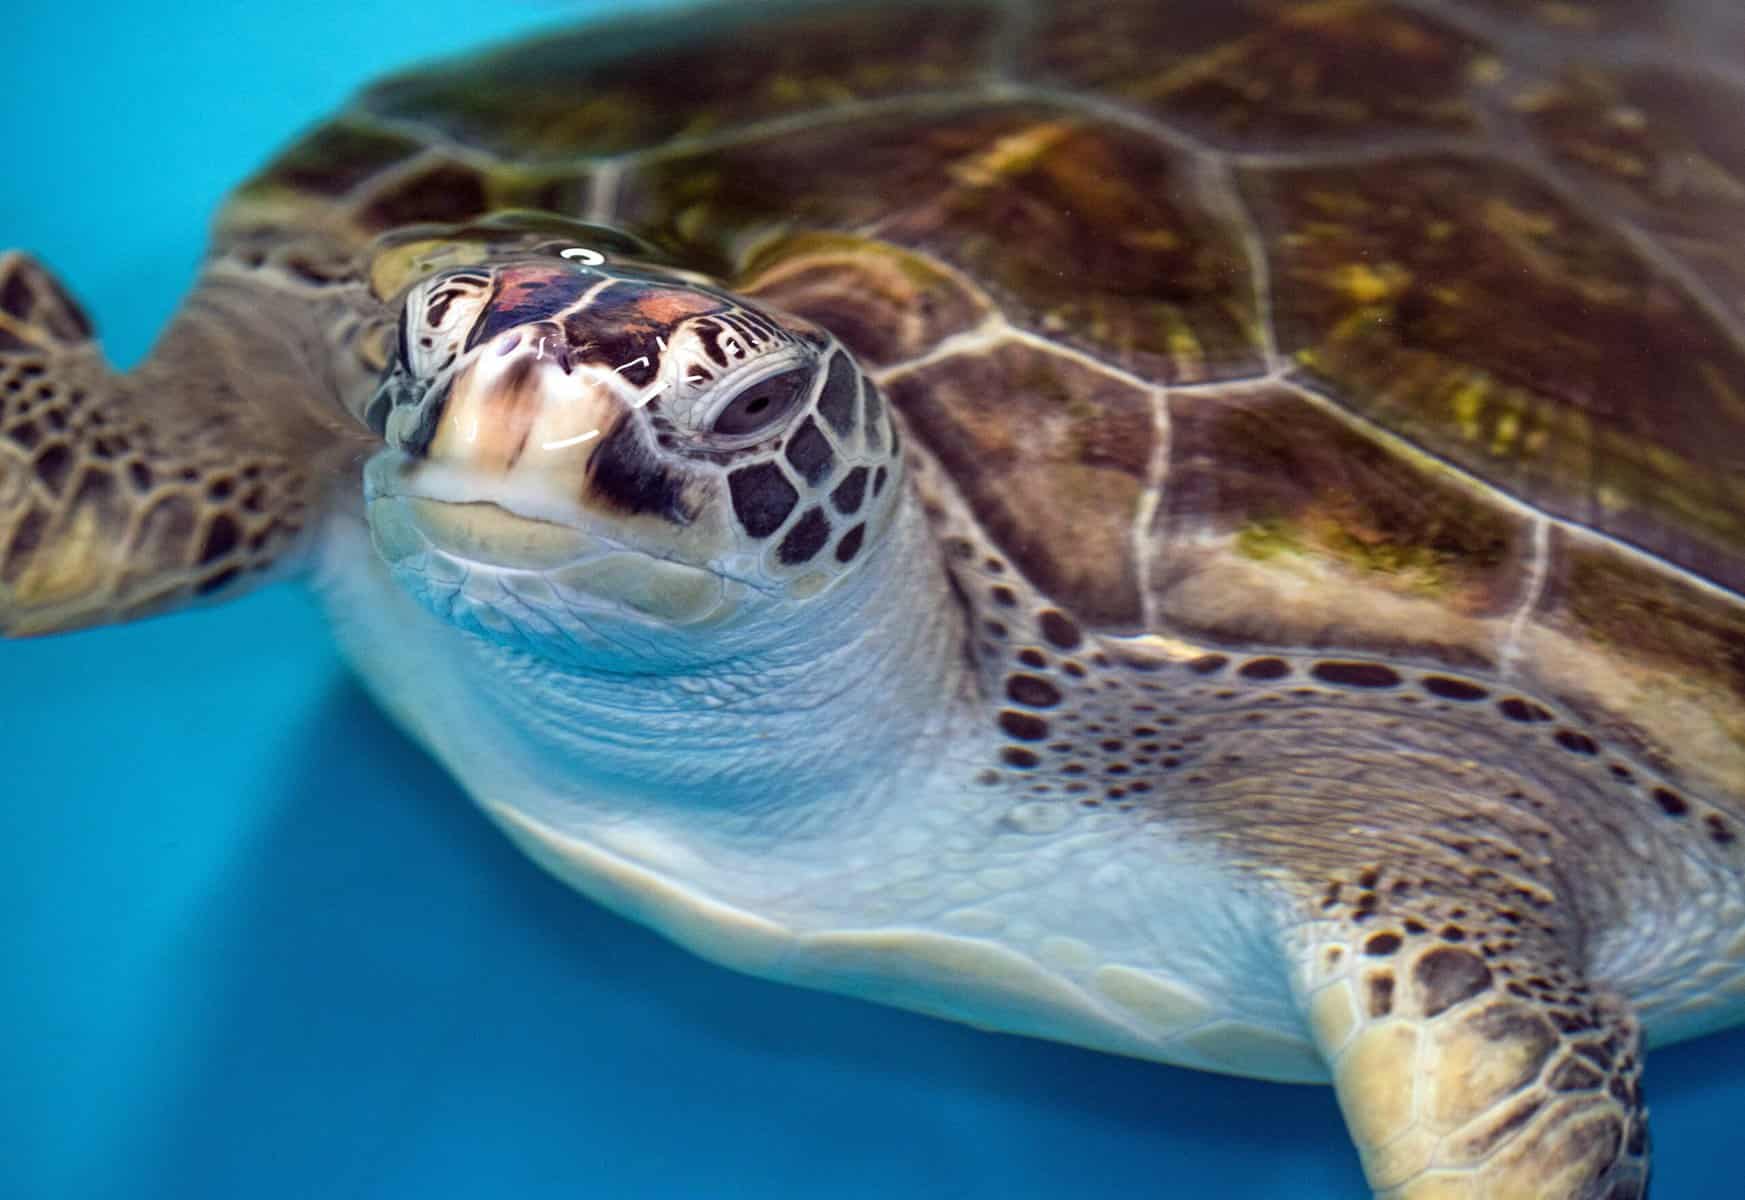 Greem Sea Turtle